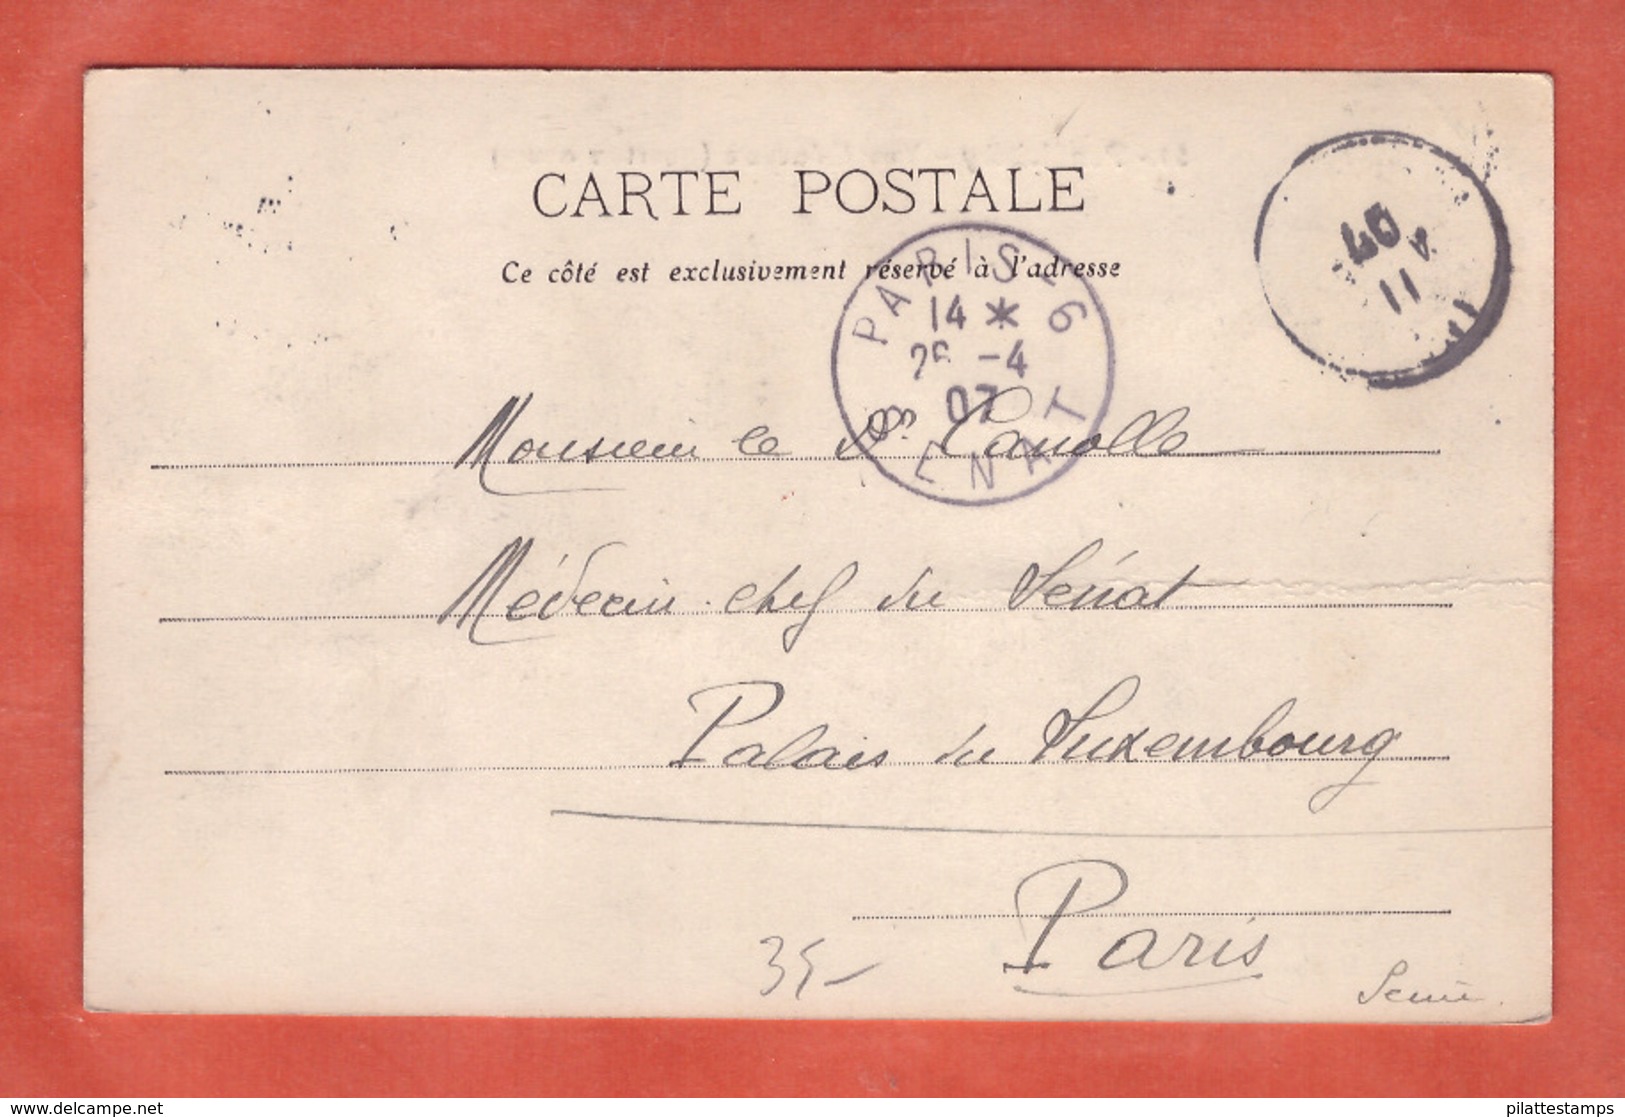 INDE 10C TYPE GROUPE SUR CARTE POSTALE DE 1907 DE PONDICHERY POUR PARIS SENAT FRANCE - Covers & Documents